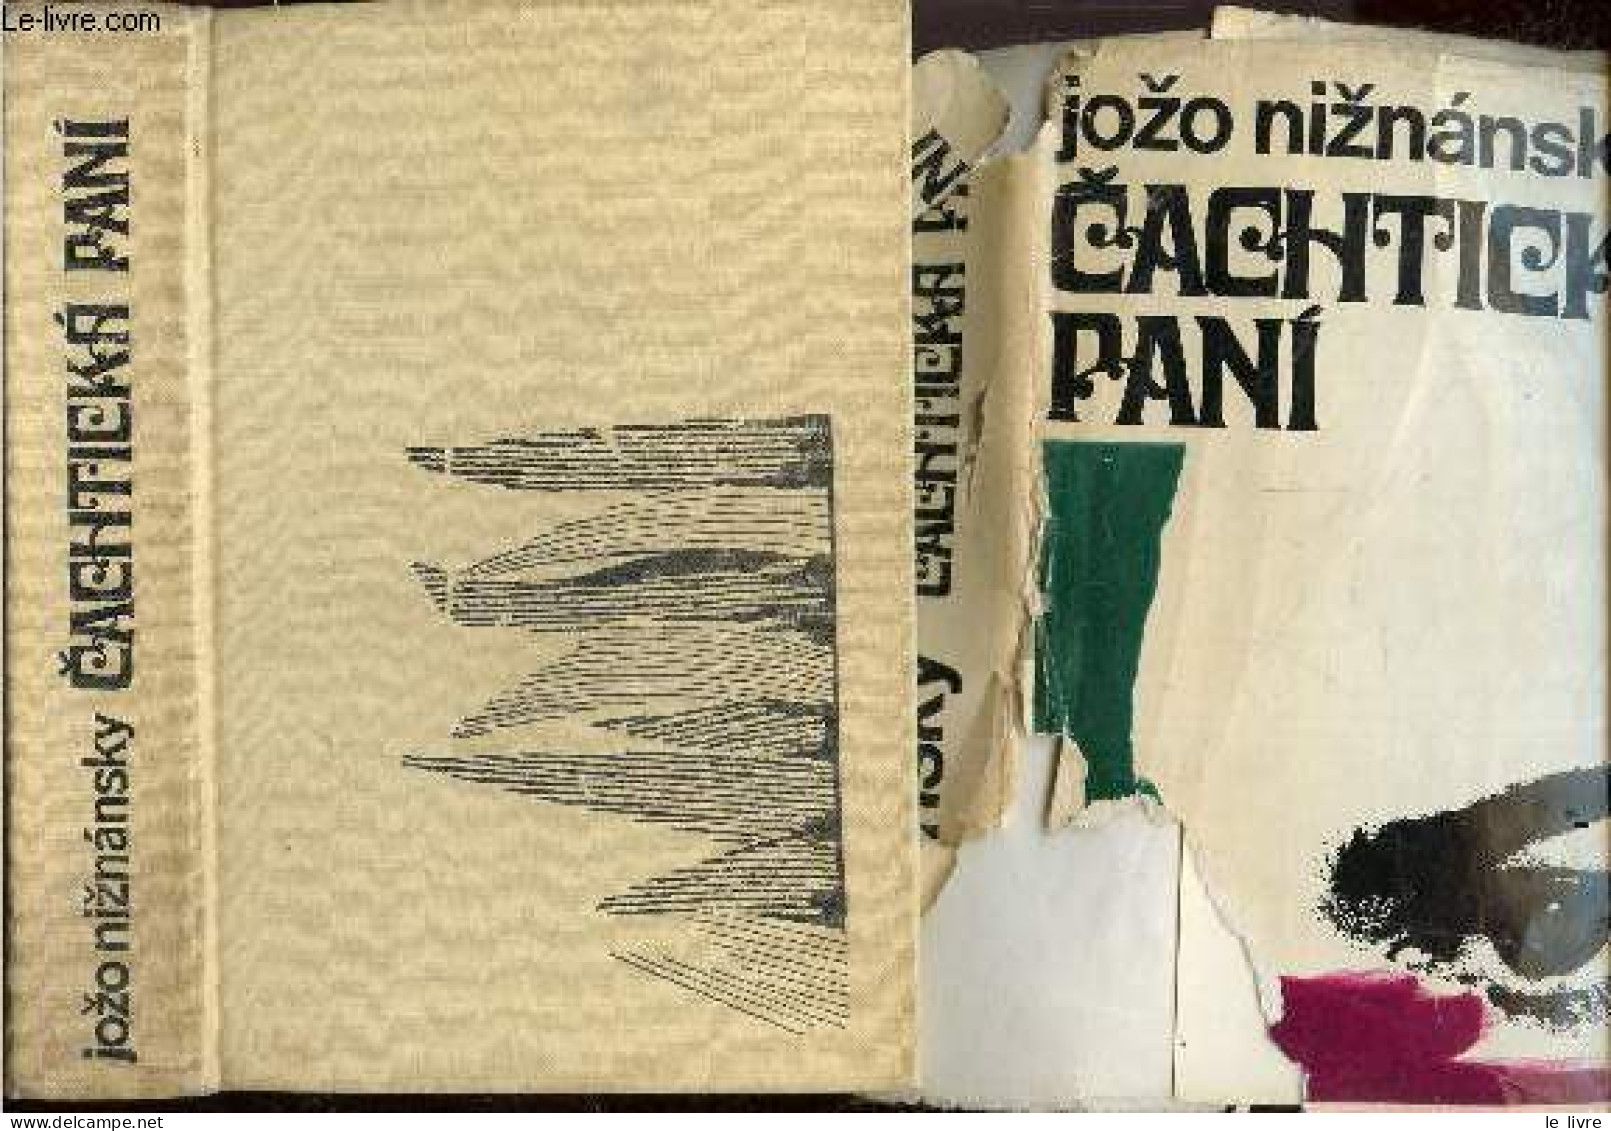 Cachticka Pani - Jozo Niznansky - Karel Klebes - 1970 - Kultur